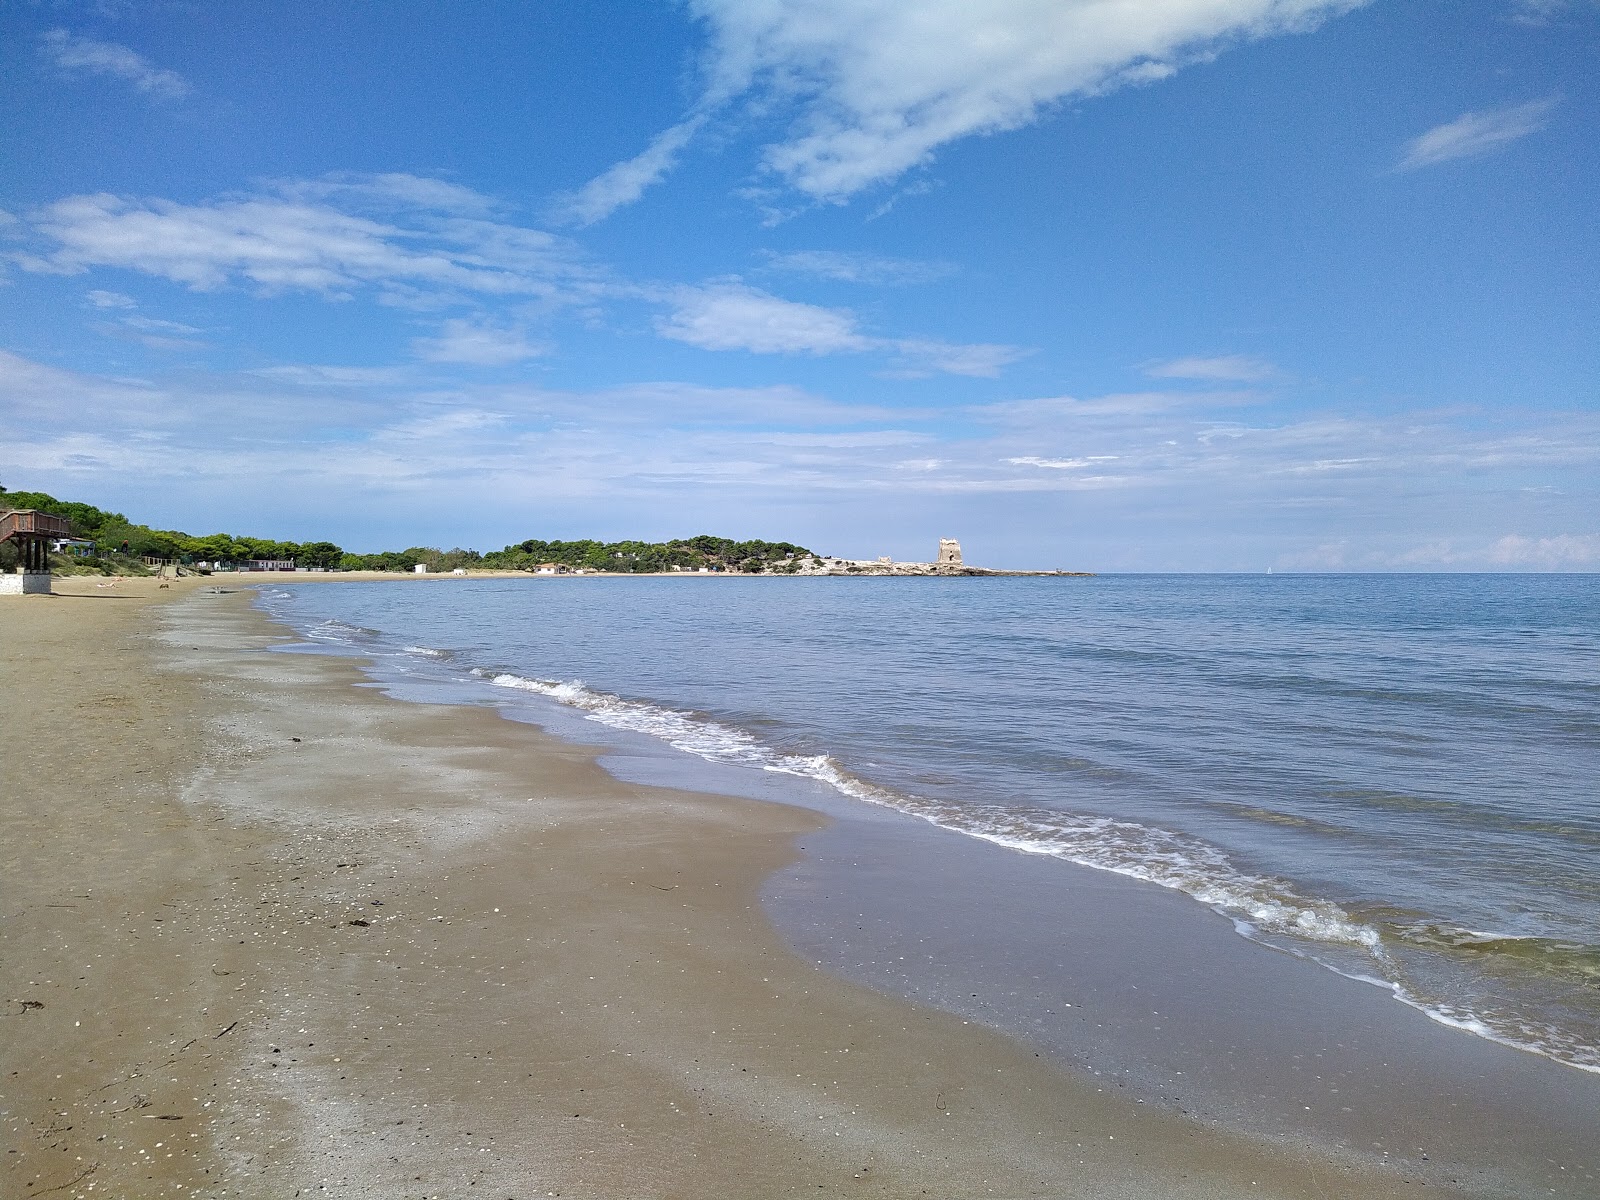 Photo de Spiaggia di Sfinale - endroit populaire parmi les connaisseurs de la détente